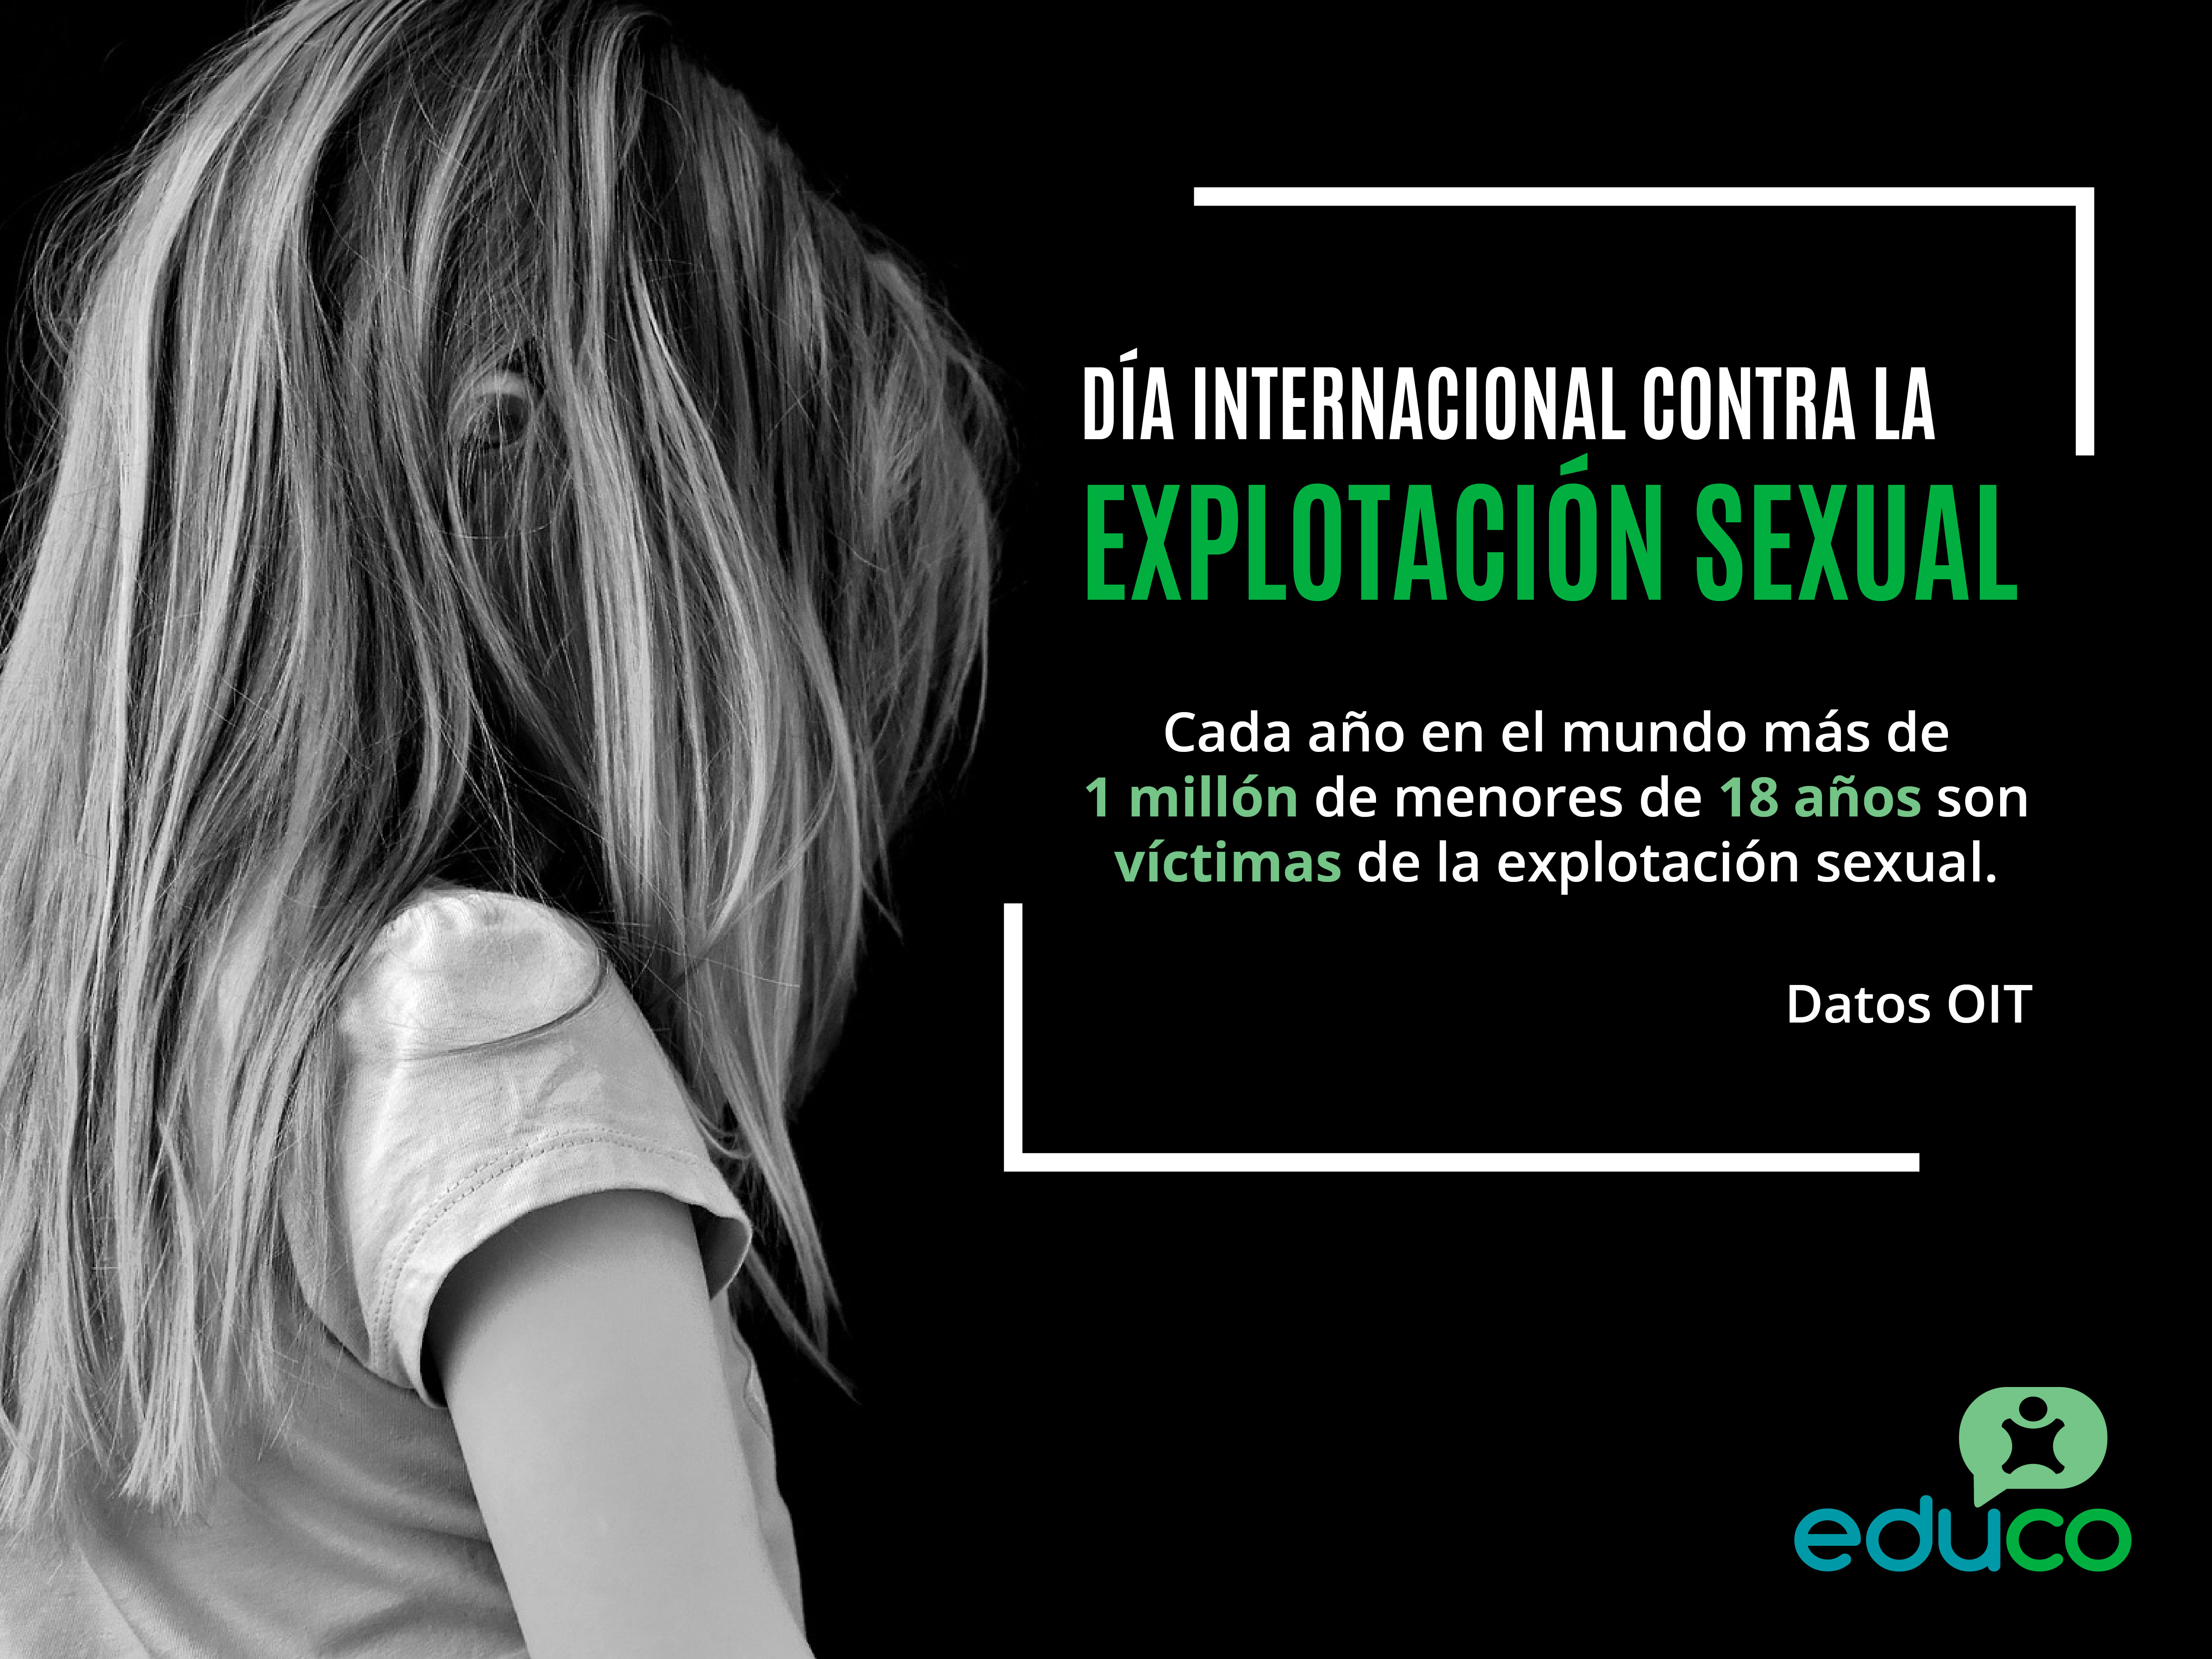 Educo Condena A Nivel Global La Explotación Sexual De La Niñez Educo 0704